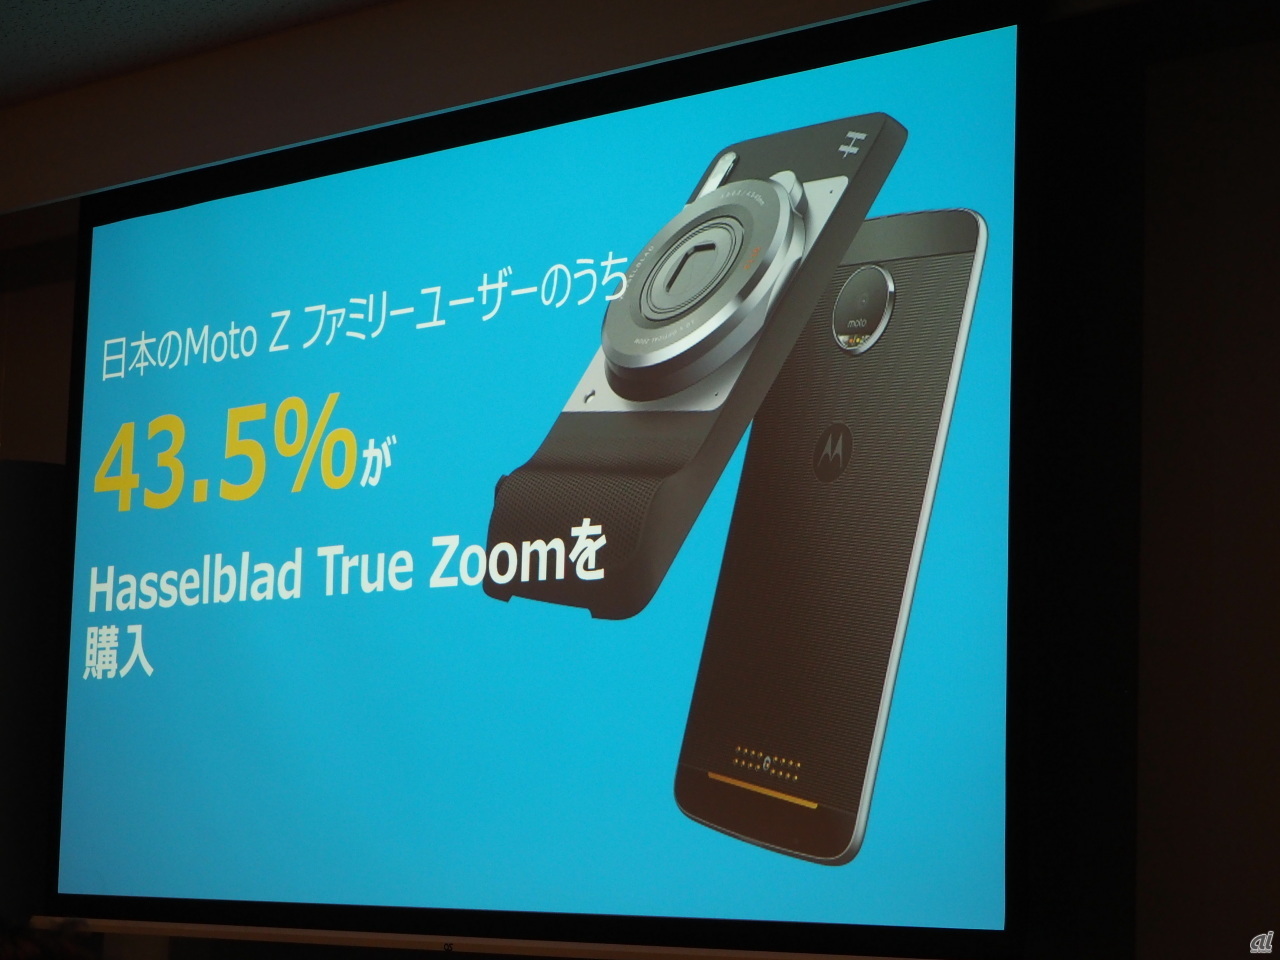 日本のMoto Zファミリーユーザーのうち43.5％が“Hasselblad True Zoom”を購入